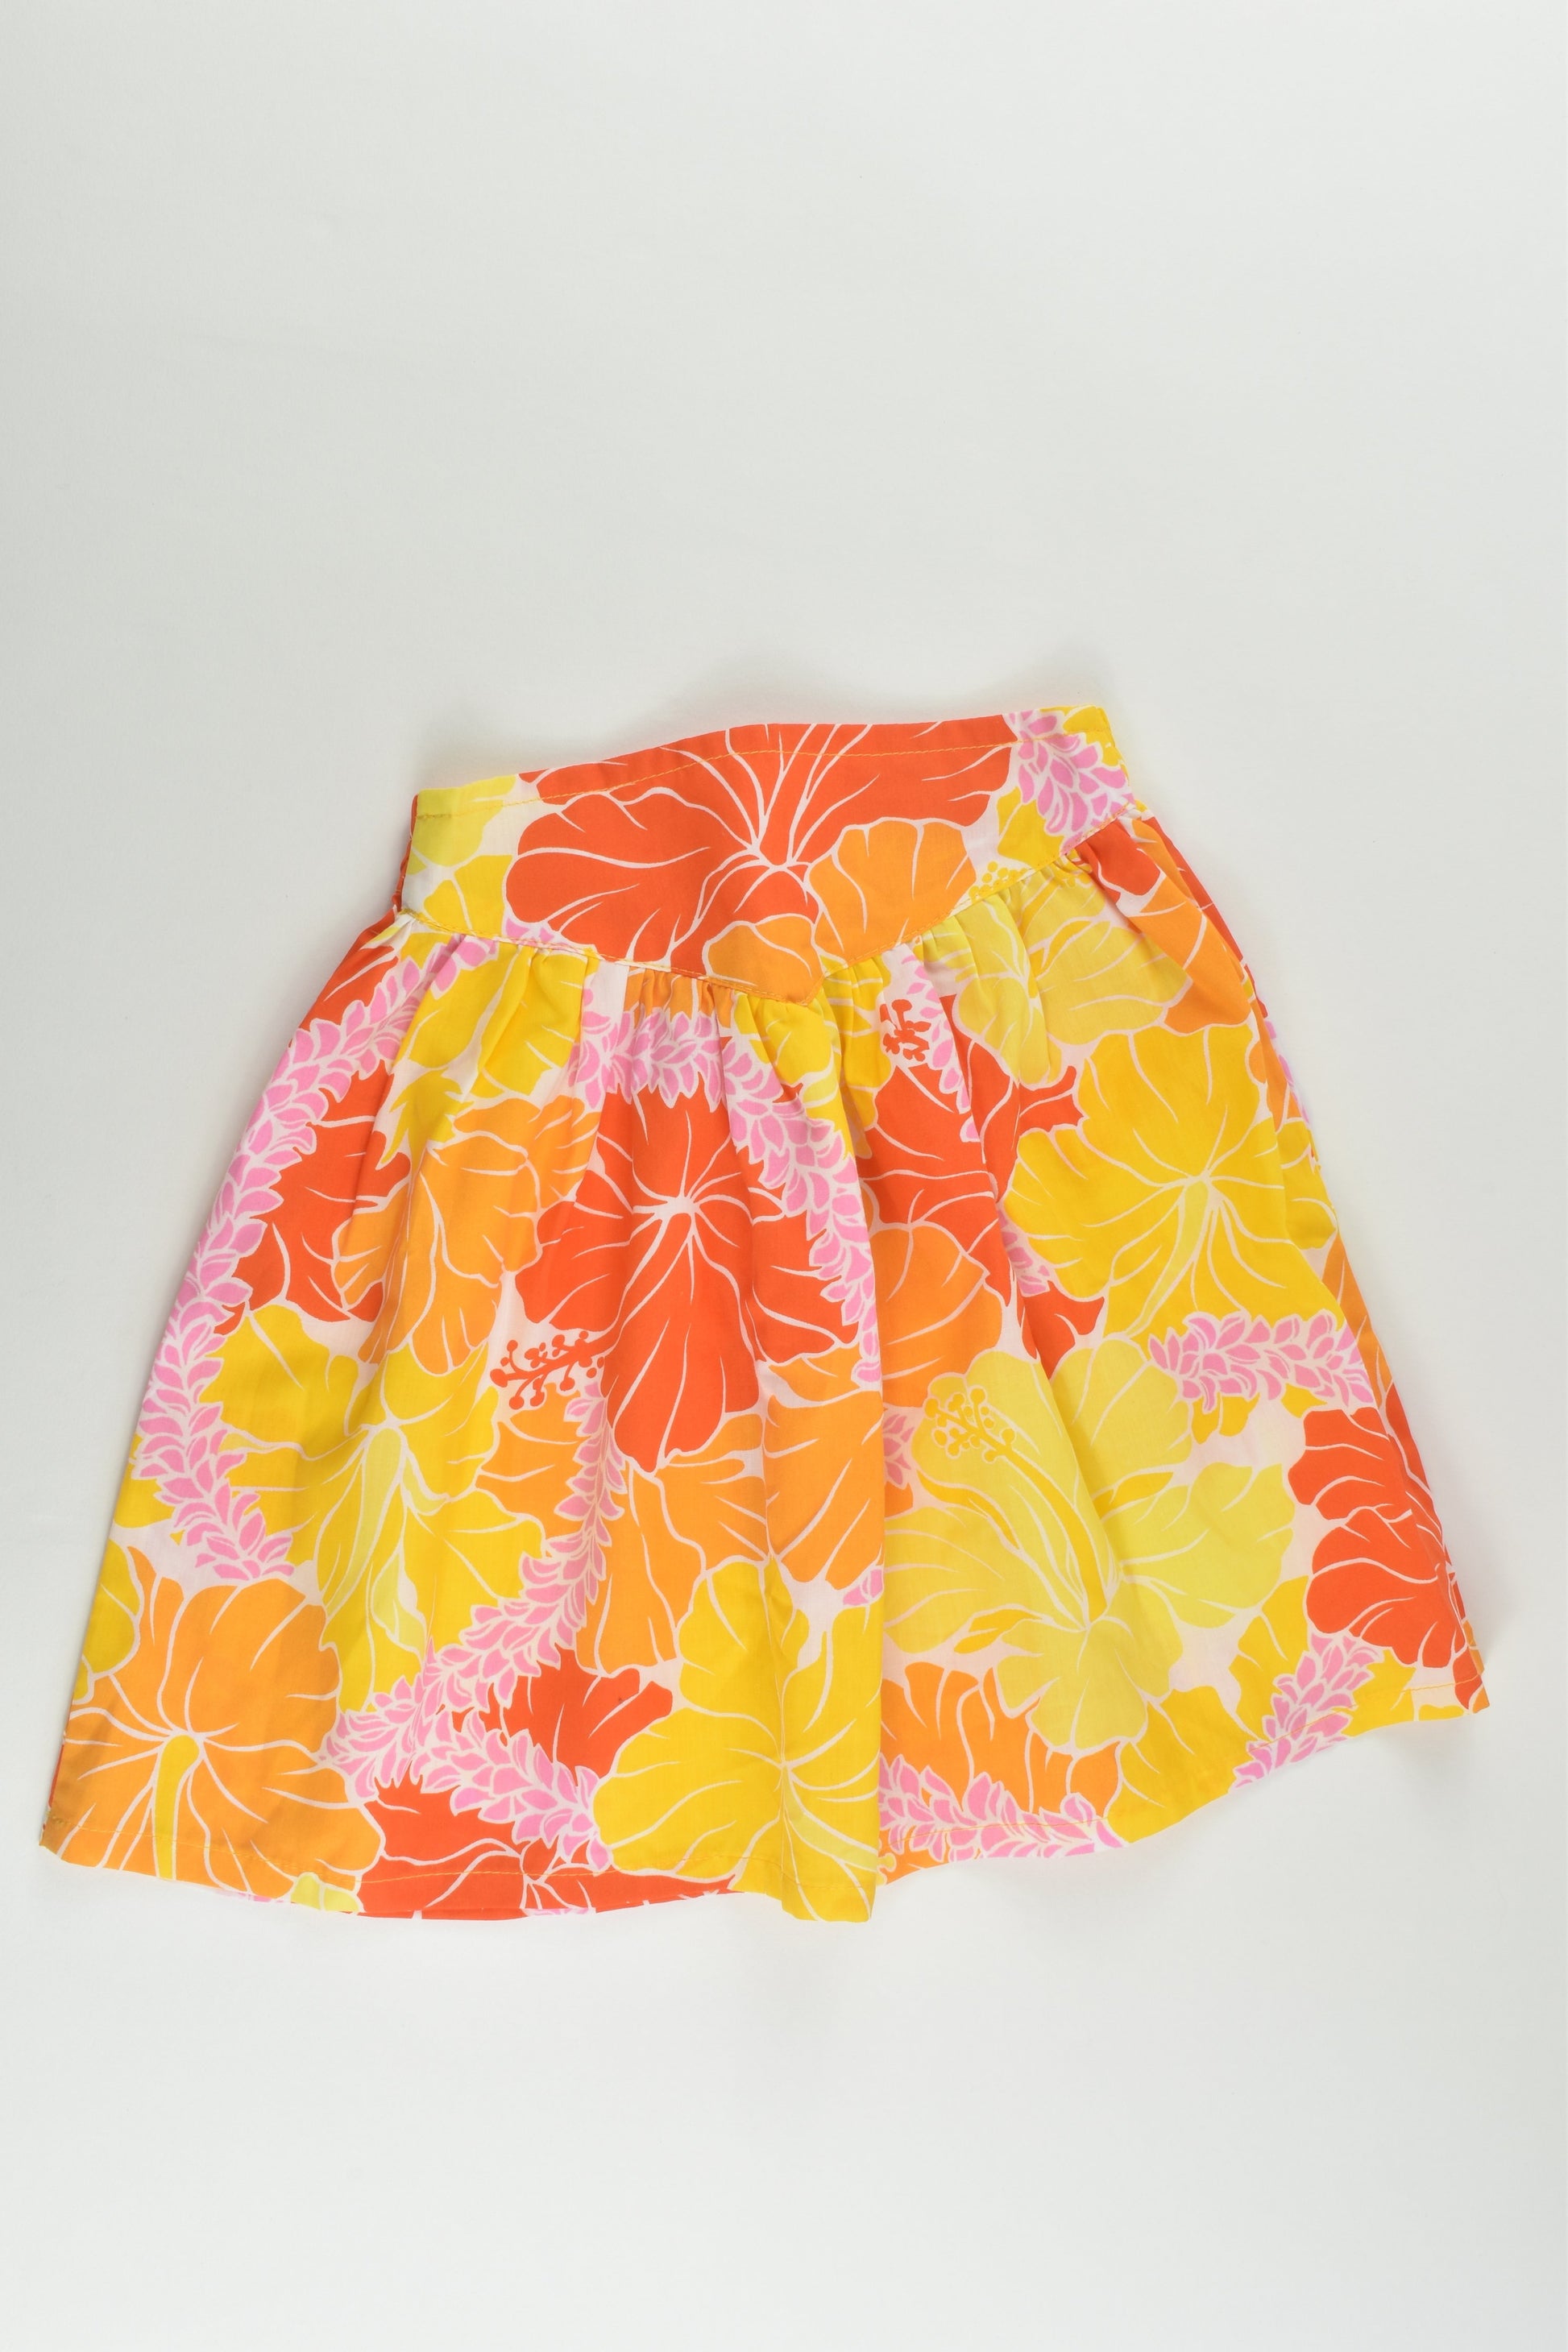 NEW Handmade Size 2 Skirt